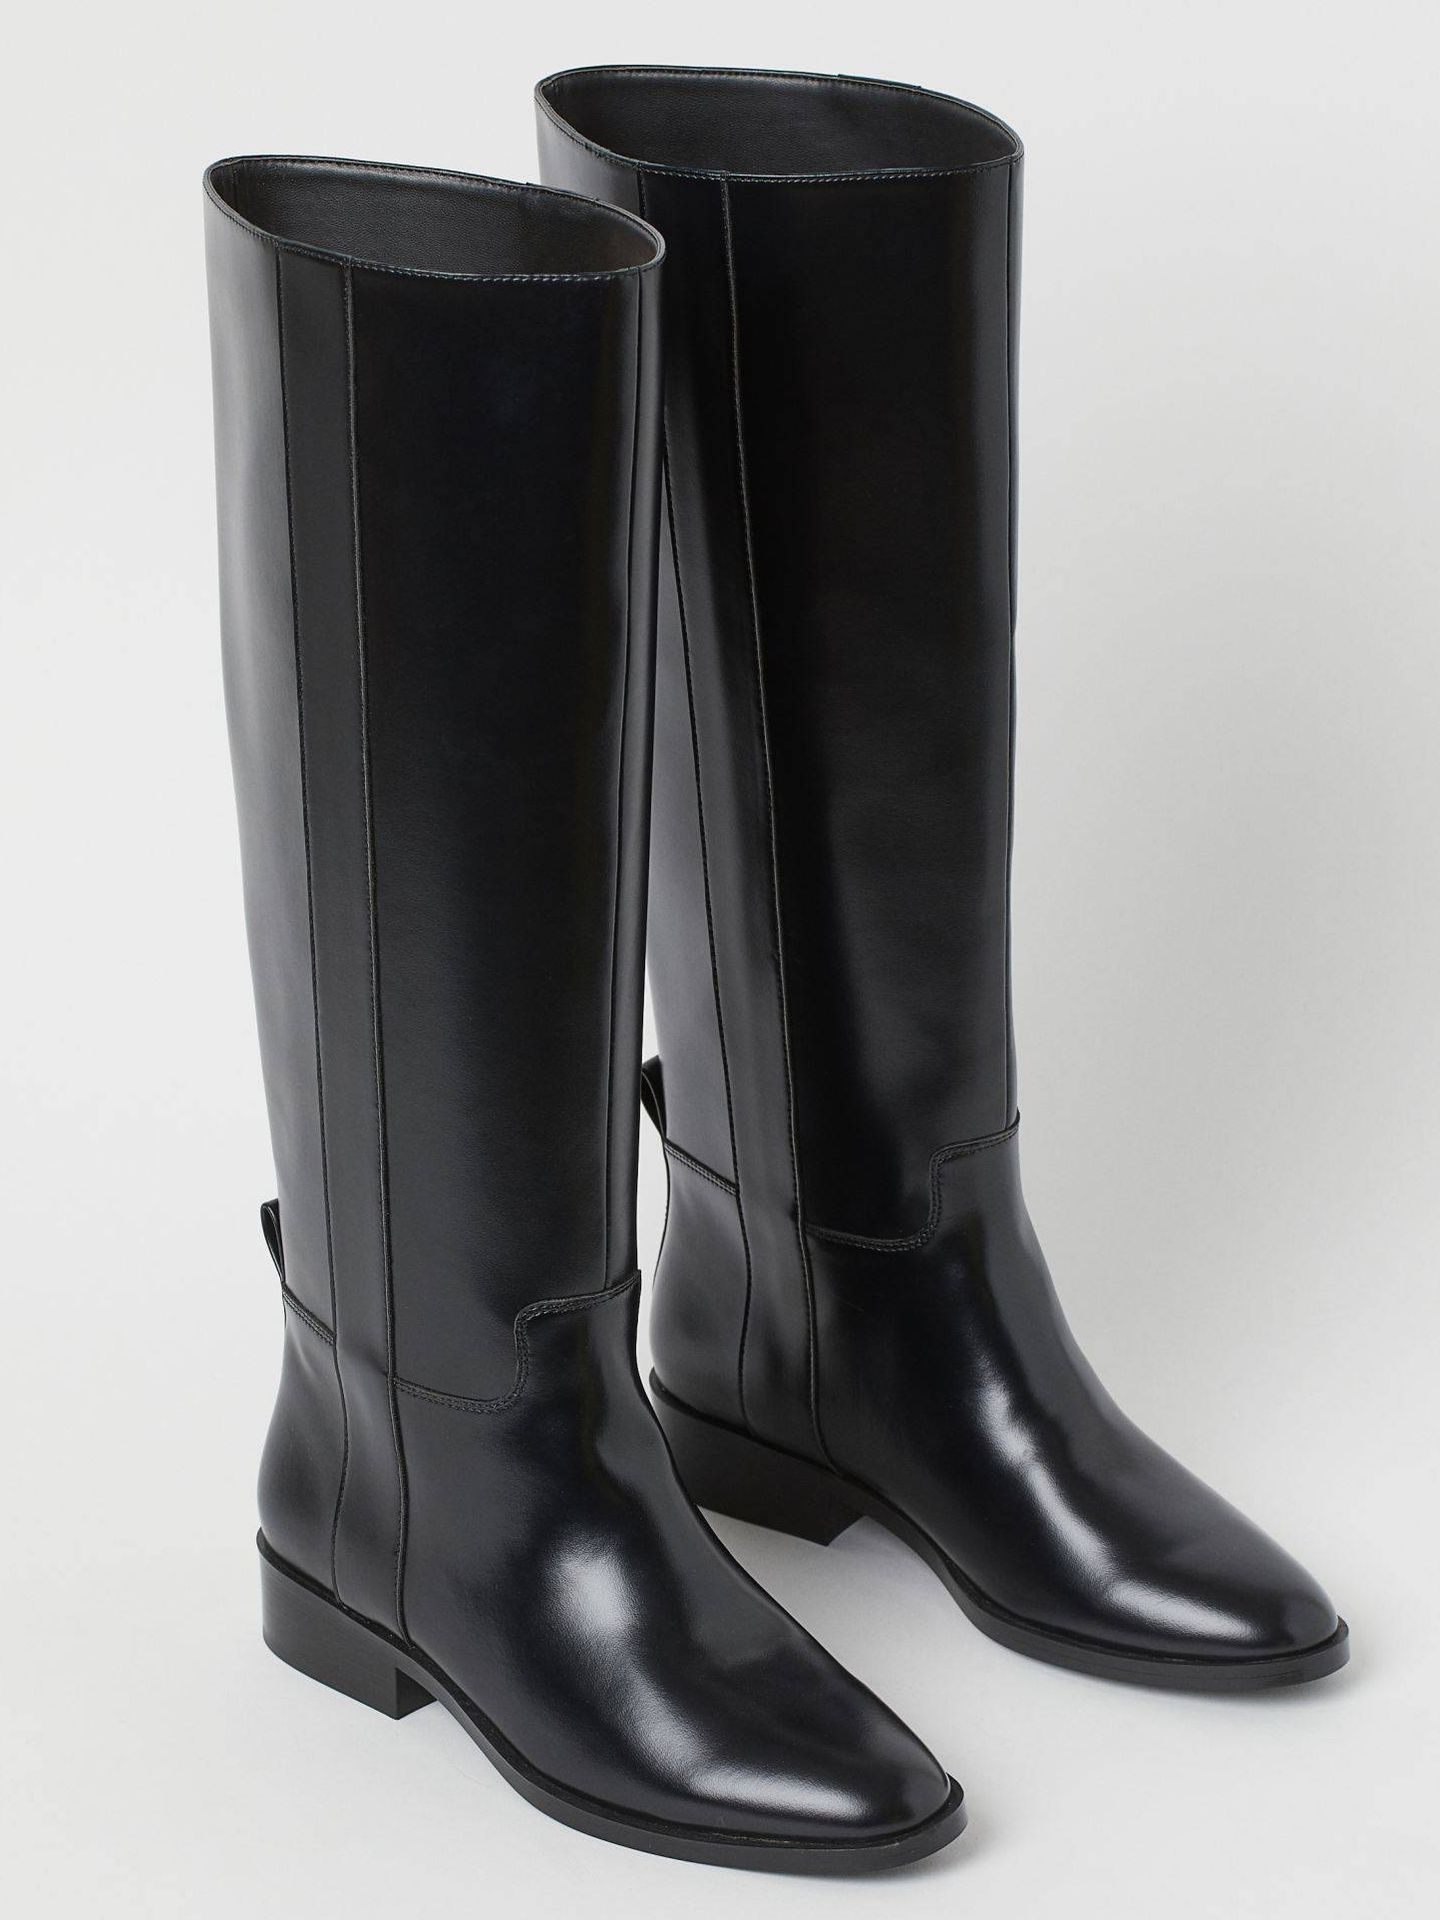 H&M tiene las botas negras sin tacón perfectas para cualquier fondo de